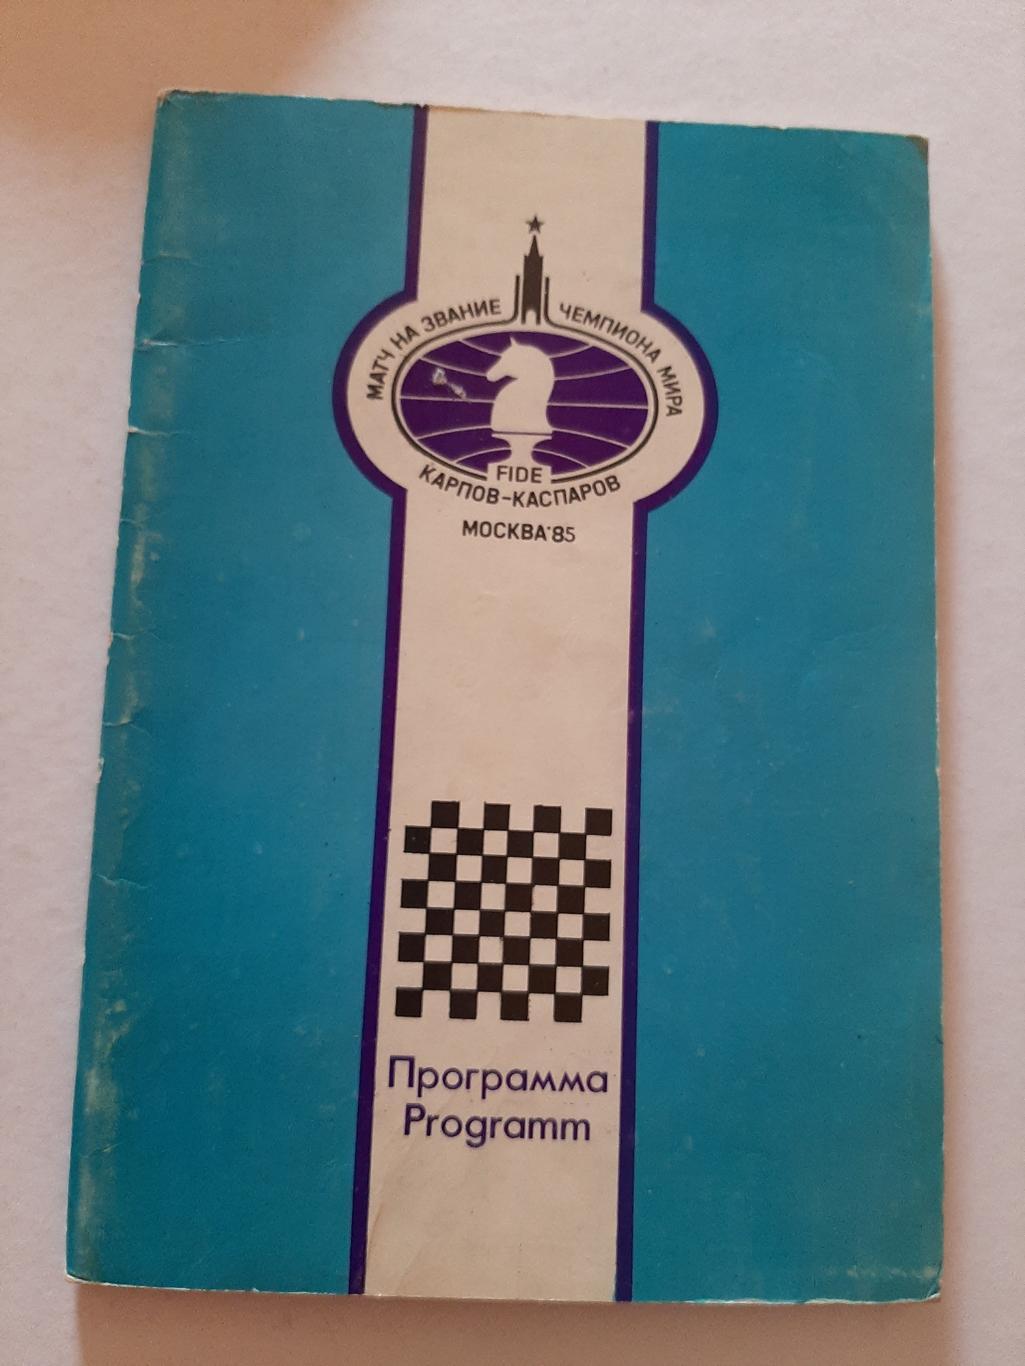 Программа матч на звание чемпиона мира Карпов-Каспаров Москва 1985